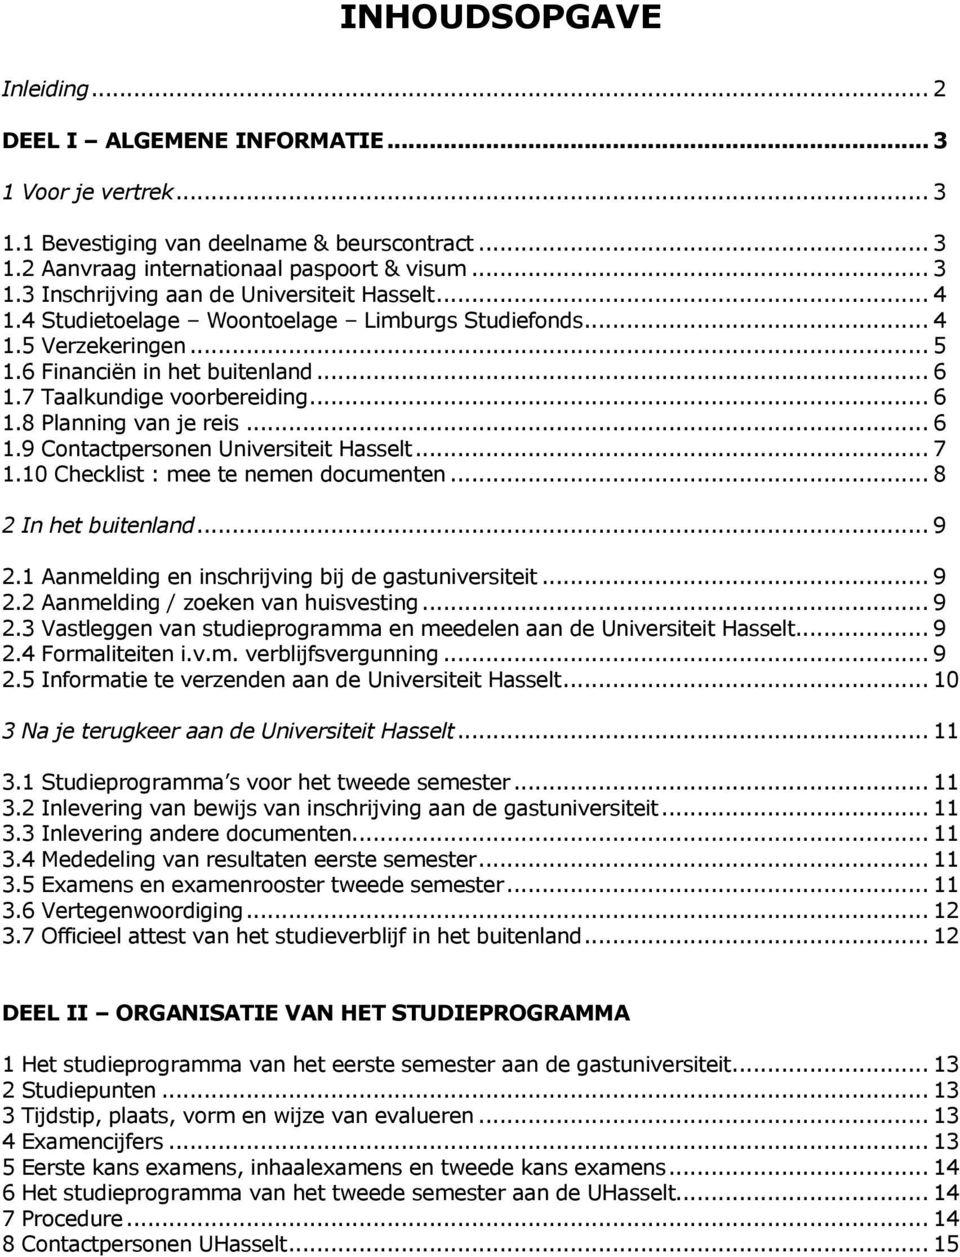 .. 7 1.10 Checklist : mee te nemen dcumenten... 8 2 In het buitenland... 9 2.1 Aanmelding en inschrijving bij de gastuniversiteit... 9 2.2 Aanmelding / zeken van huisvesting... 9 2.3 Vastleggen van studieprgramma en meedelen aan de Universiteit Hasselt.